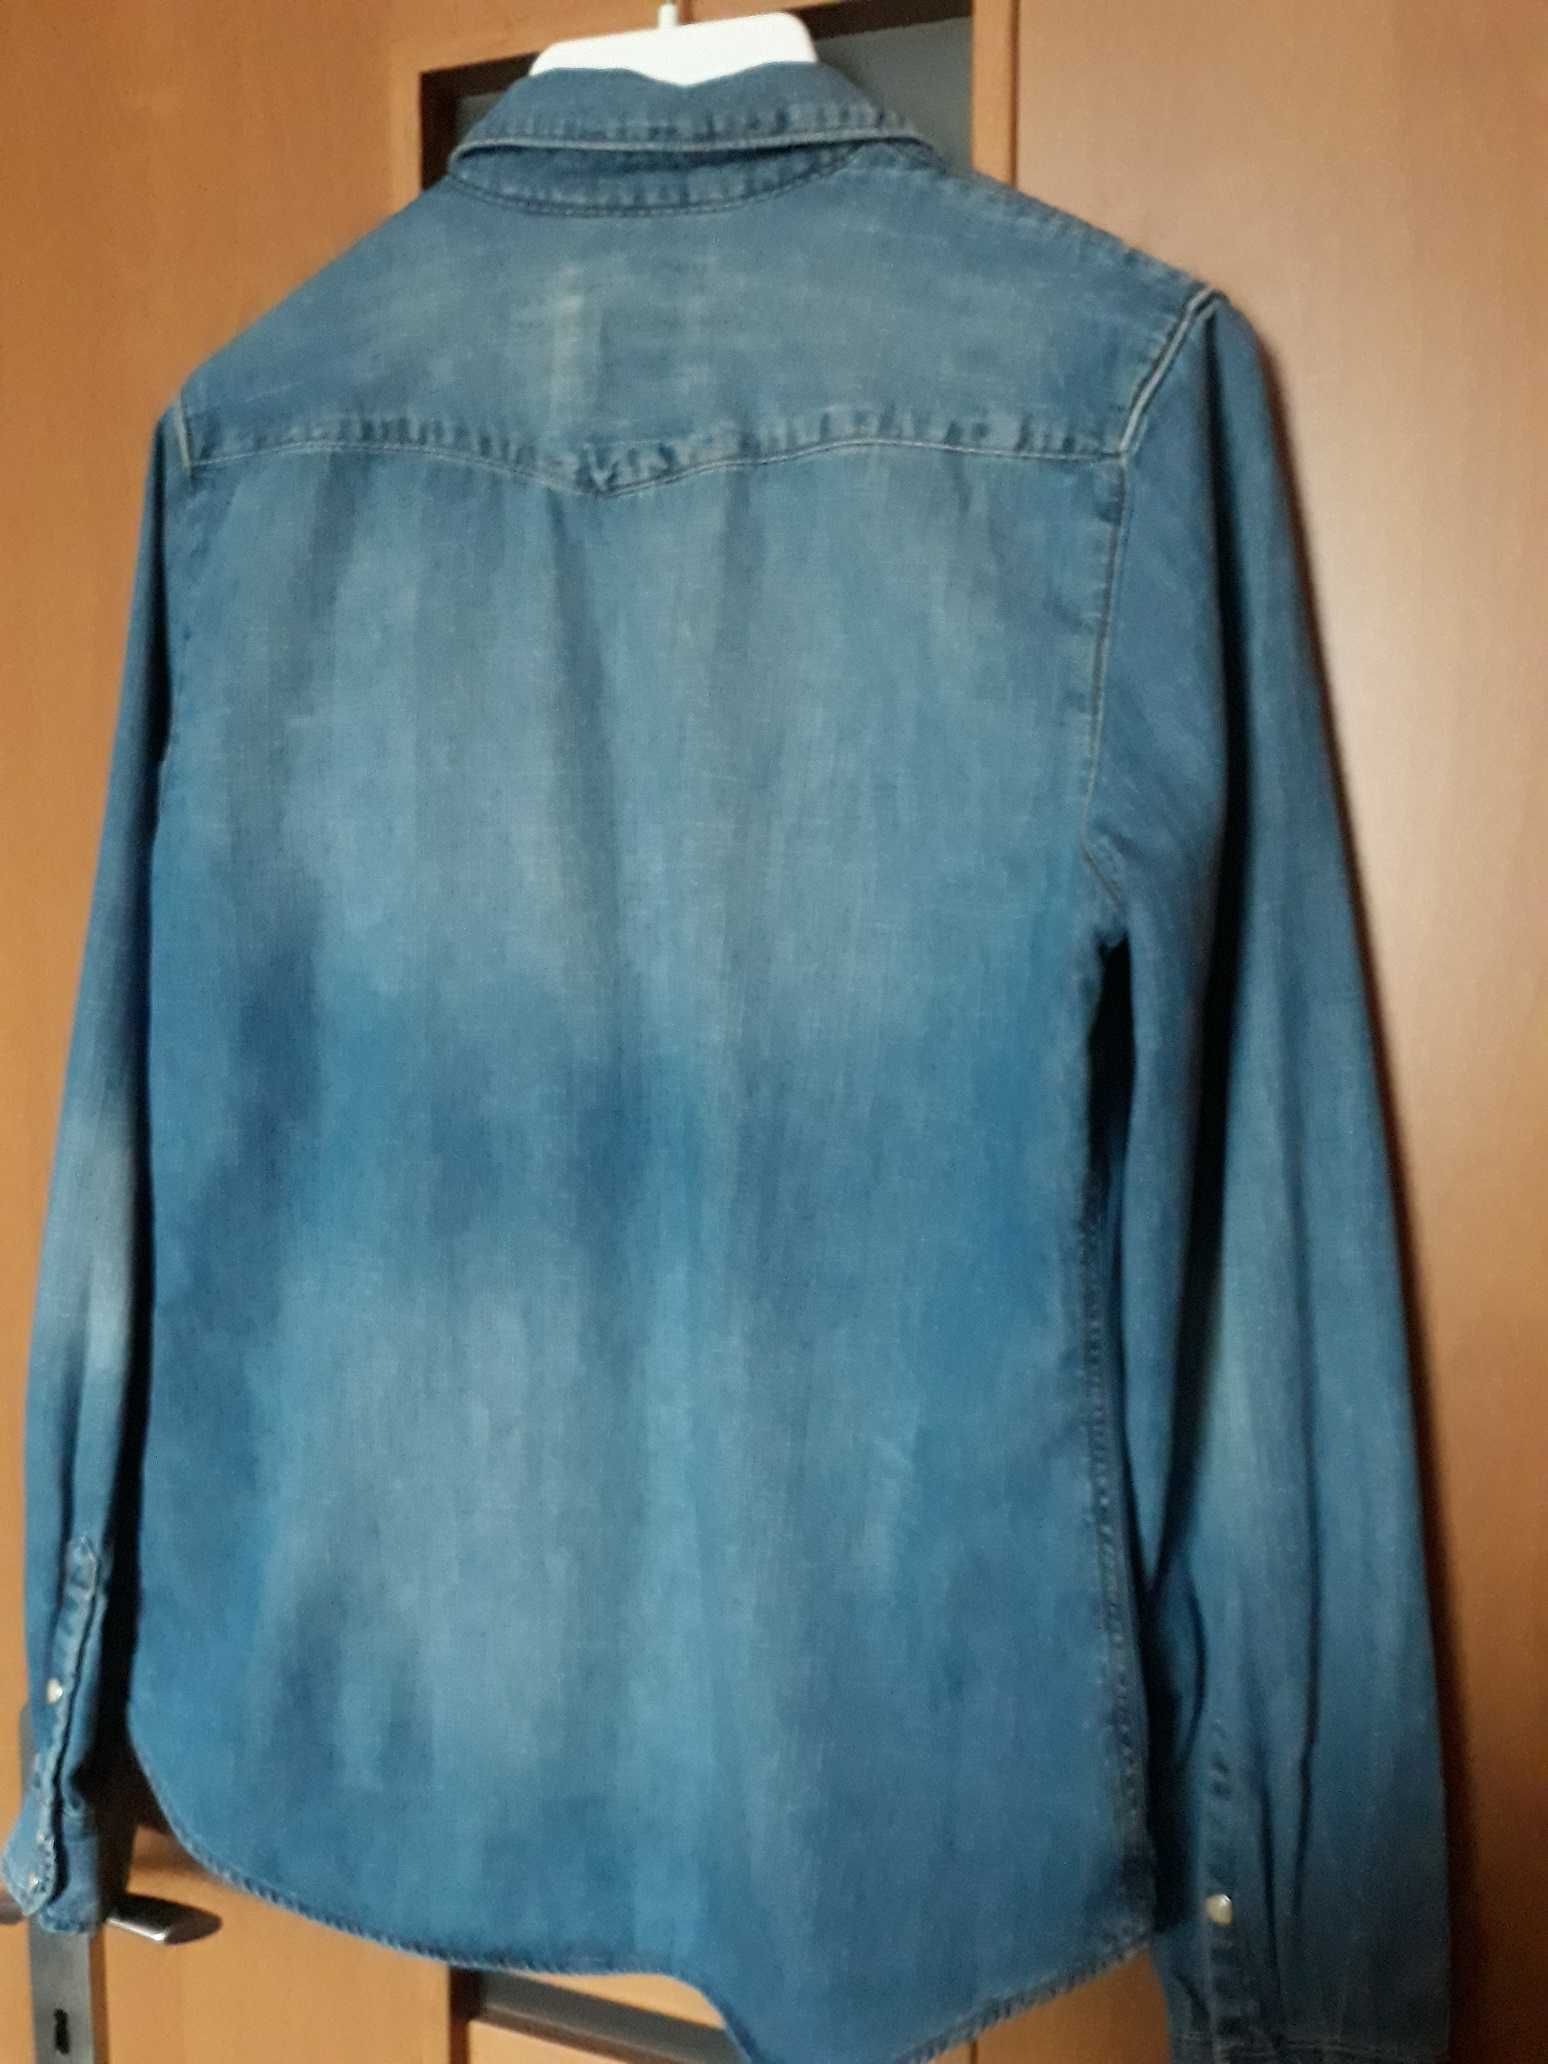 Bluzka dżinsowa niebieska koszula kieszonki H&M bawełna rozmiar 36